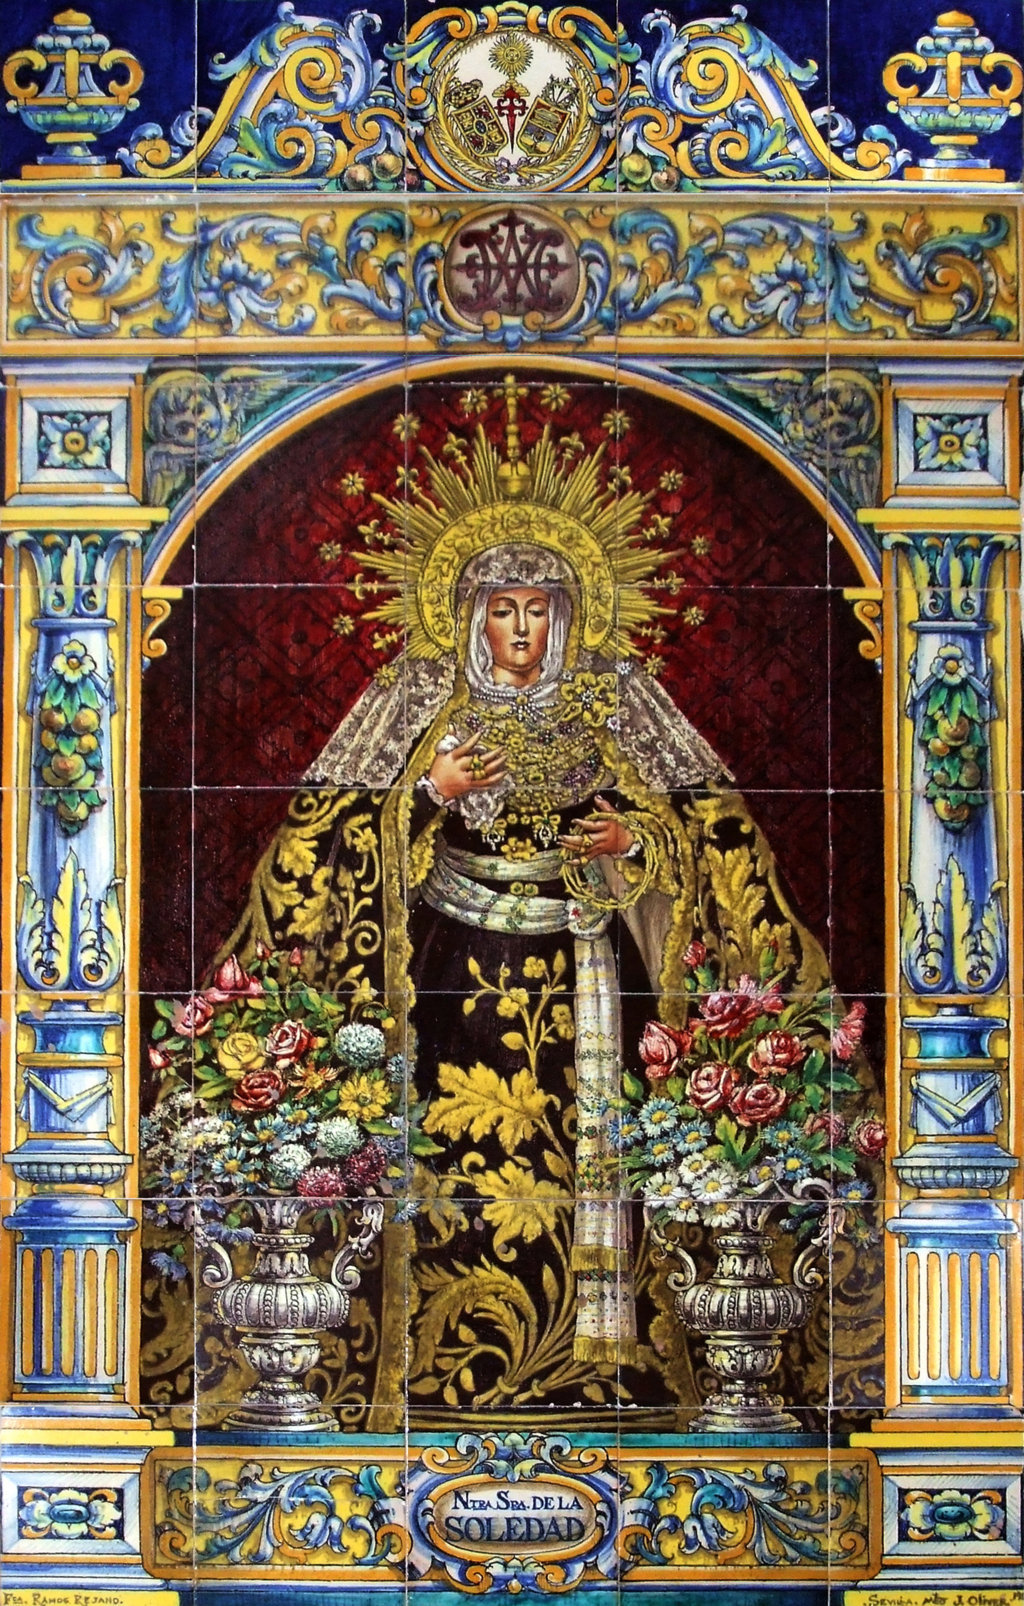 D00111. Retablo de Nuestra Señora de la Soledad